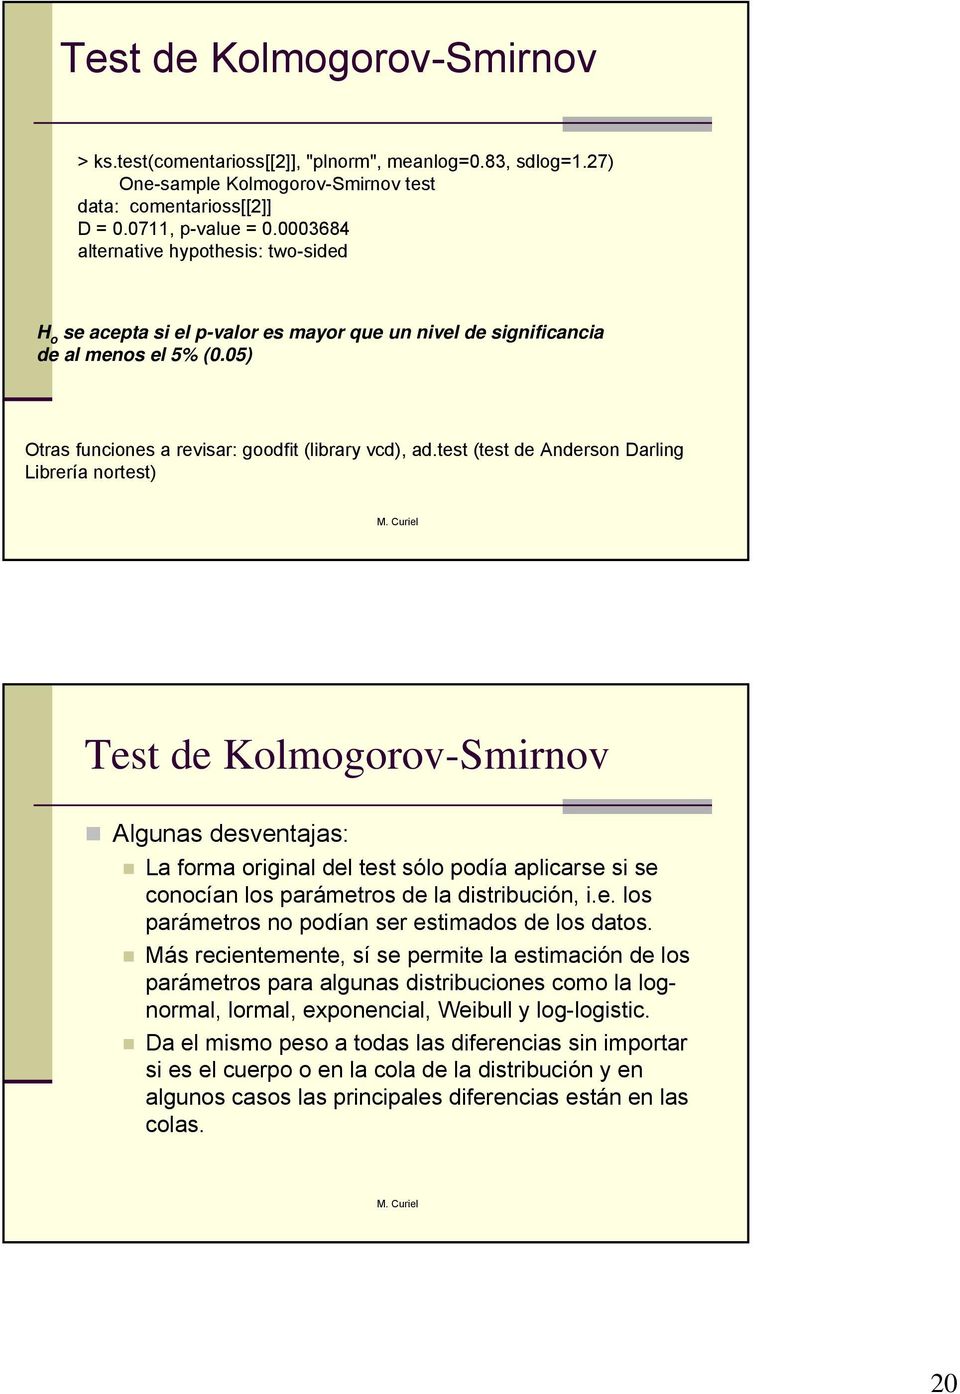 test (test de Aderso Darlig Librería ortest) Test de Kolmogorov-Smirov Alguas desvetajas: La forma origial del test sólo podía aplicarse si se coocía los parámetros de la distribució, i.e. los parámetros o podía ser estimados de los datos.